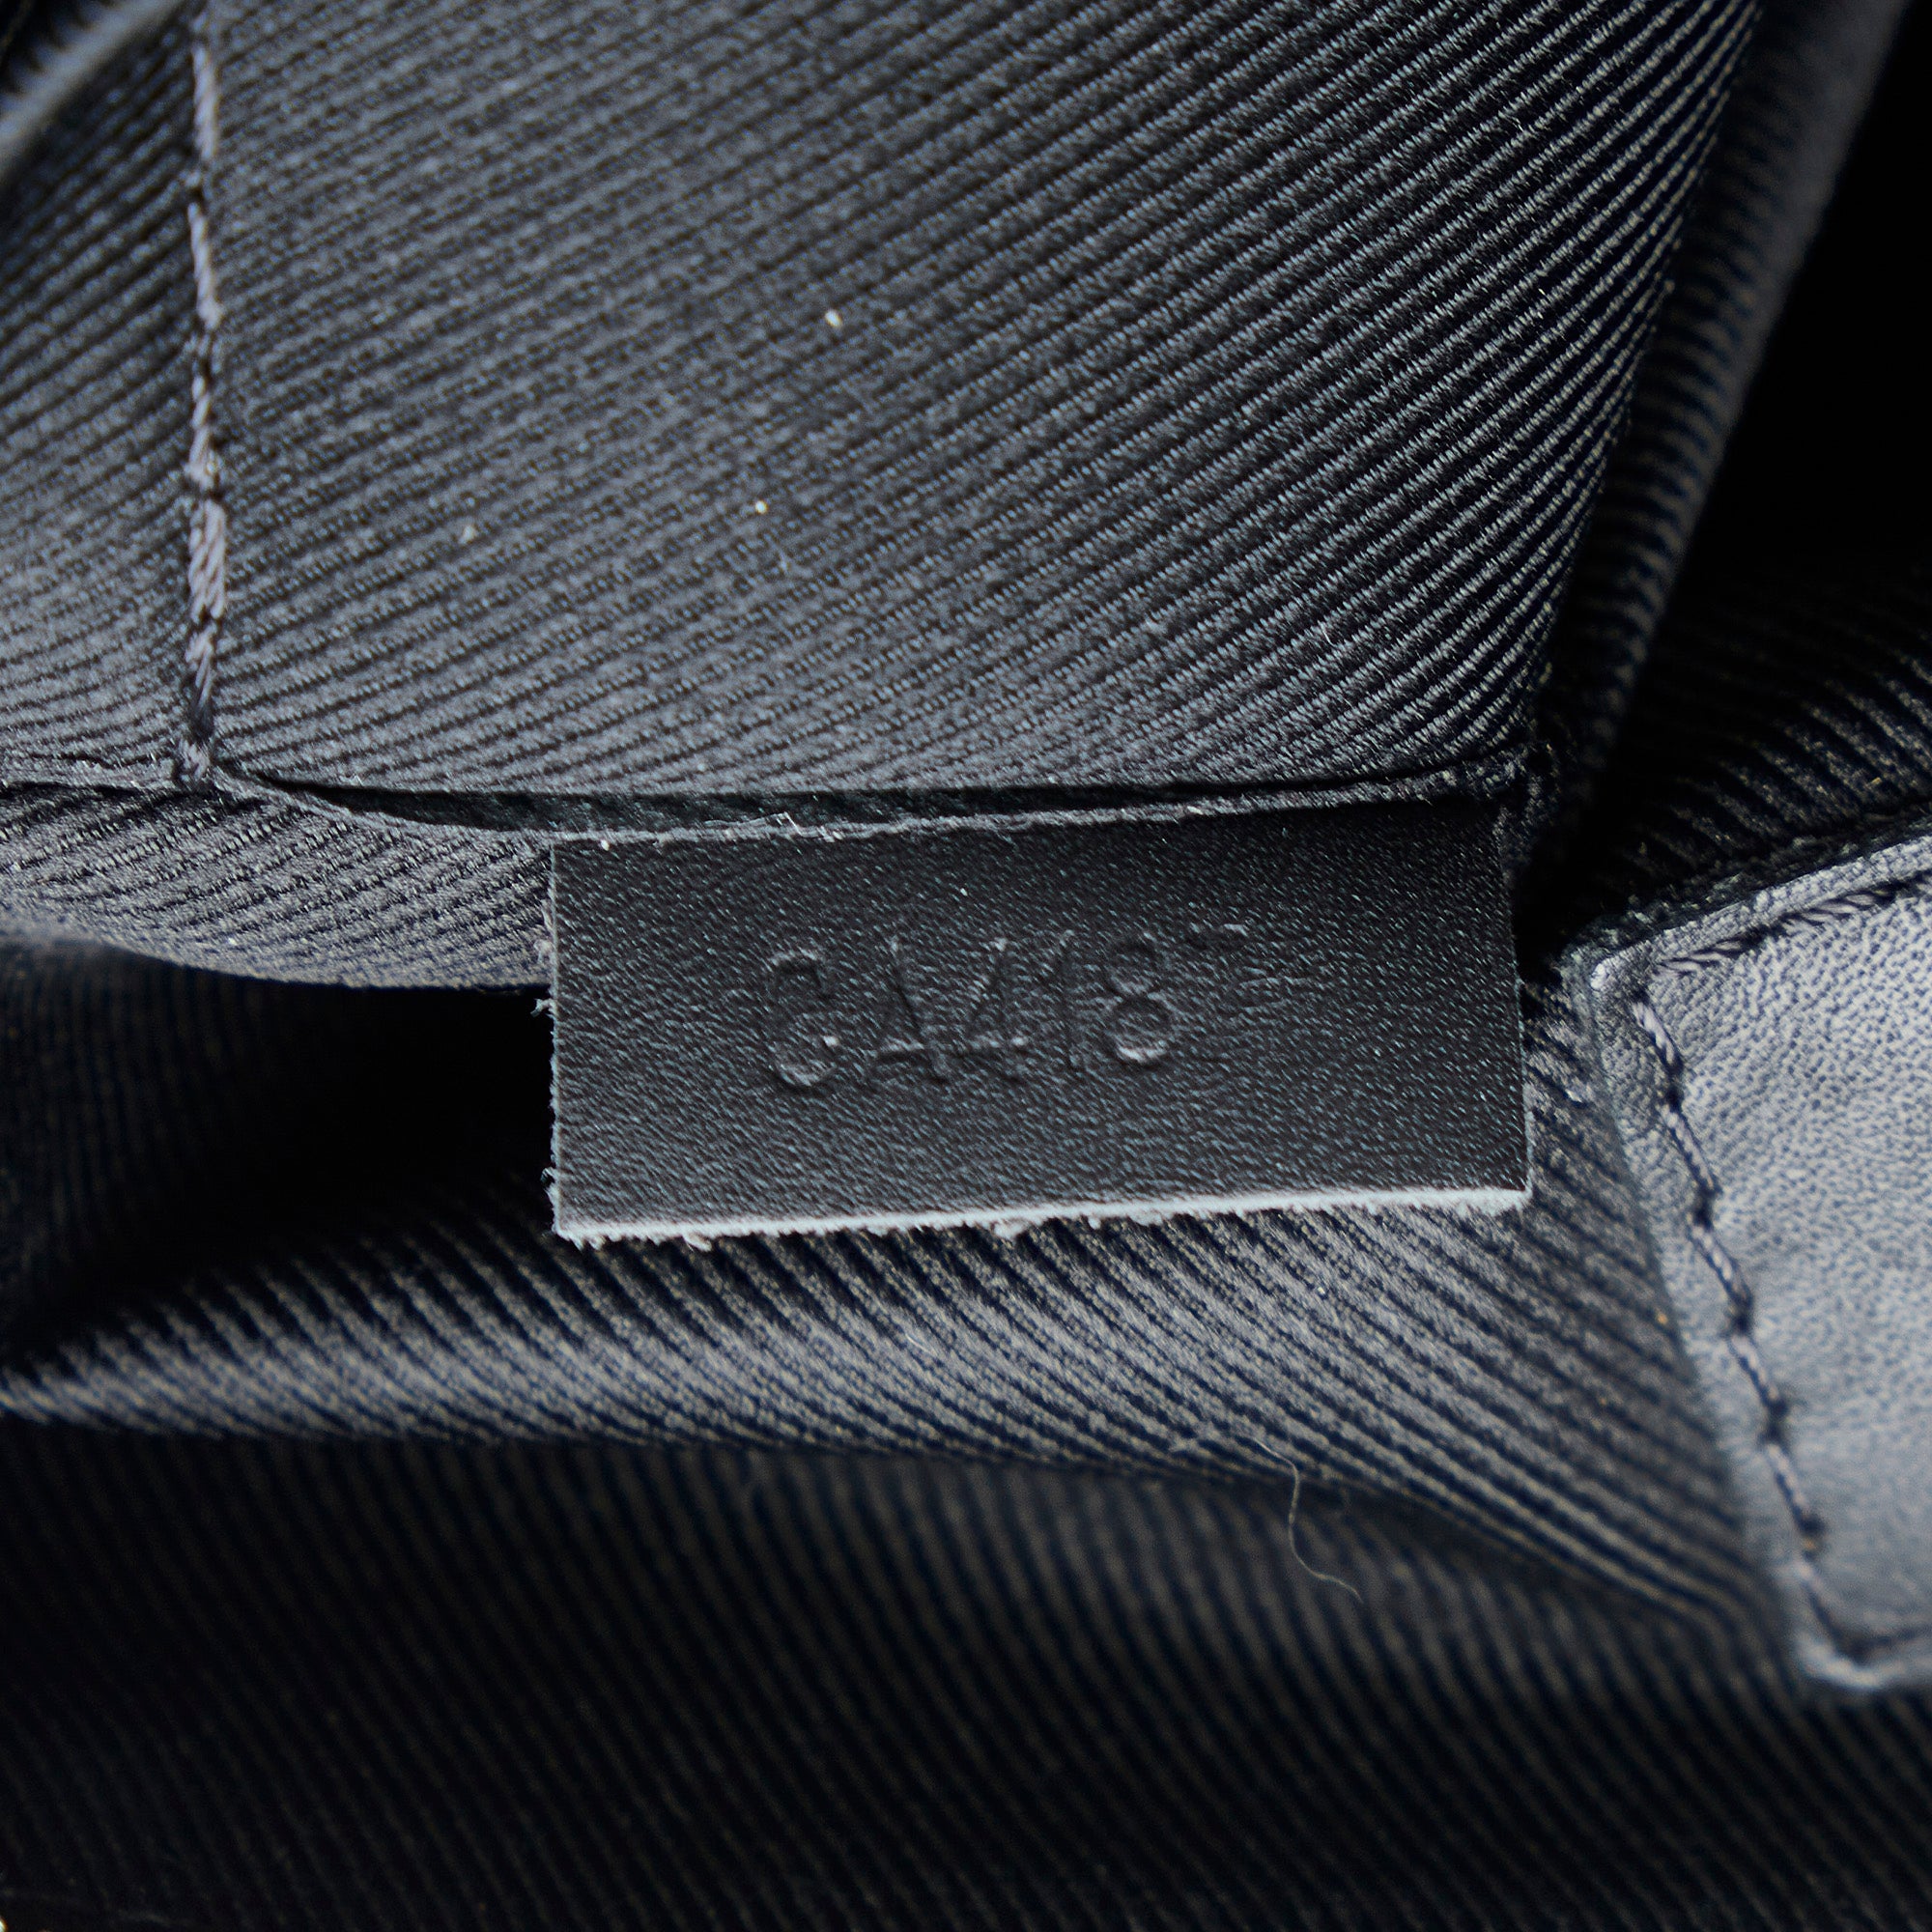 At Auction: Louis Vuitton, Louis Vuitton - Damier Infini Leather Messenger  BB - Black Crossbody